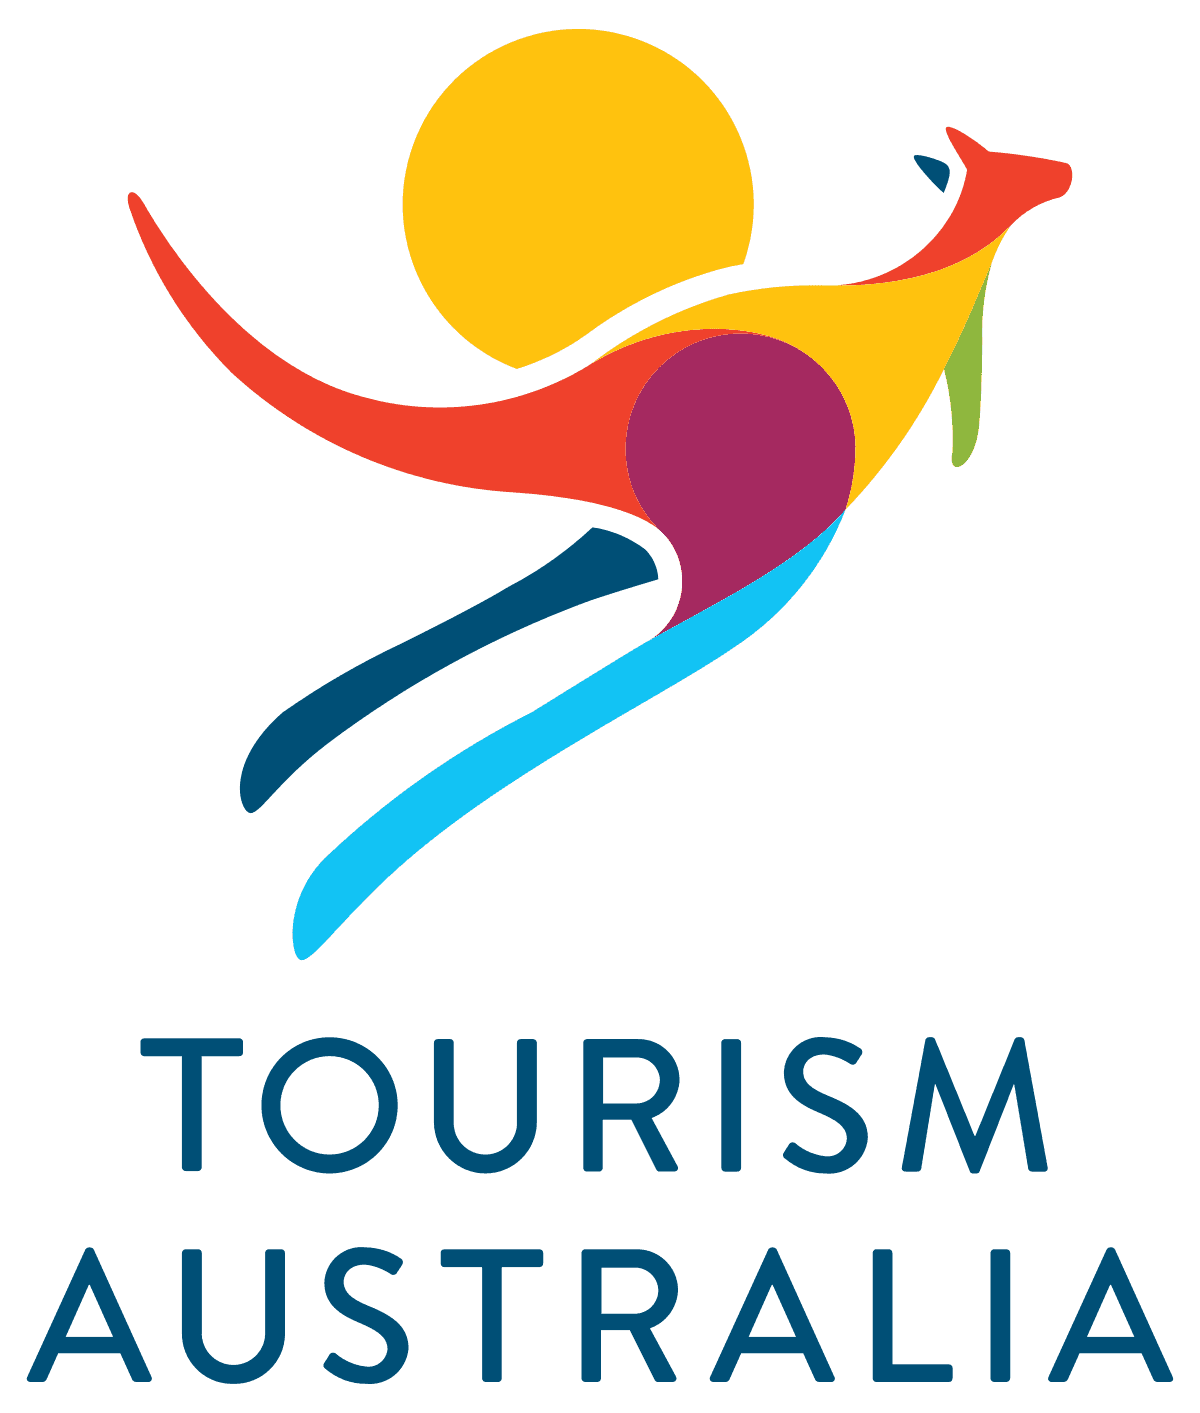 Dieser Beitrag entstand mit der freundlichen Unterstützung von Tourism Australia.